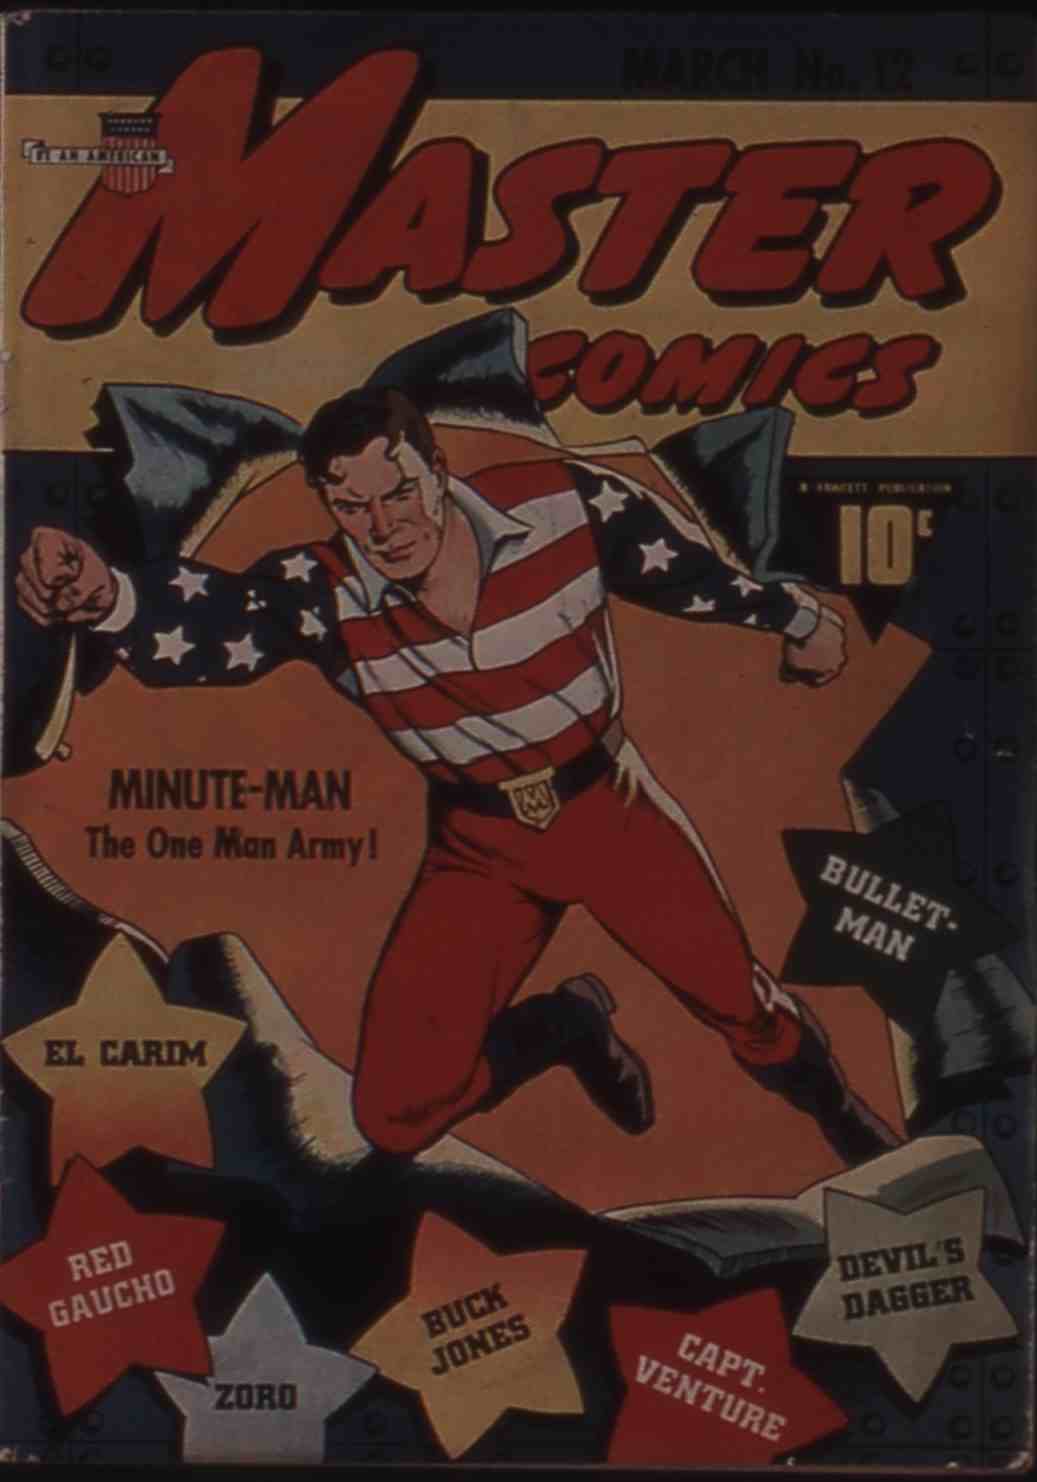 Comic Book Cover For Buck Jones (Fawcett Master Comics) vol 1